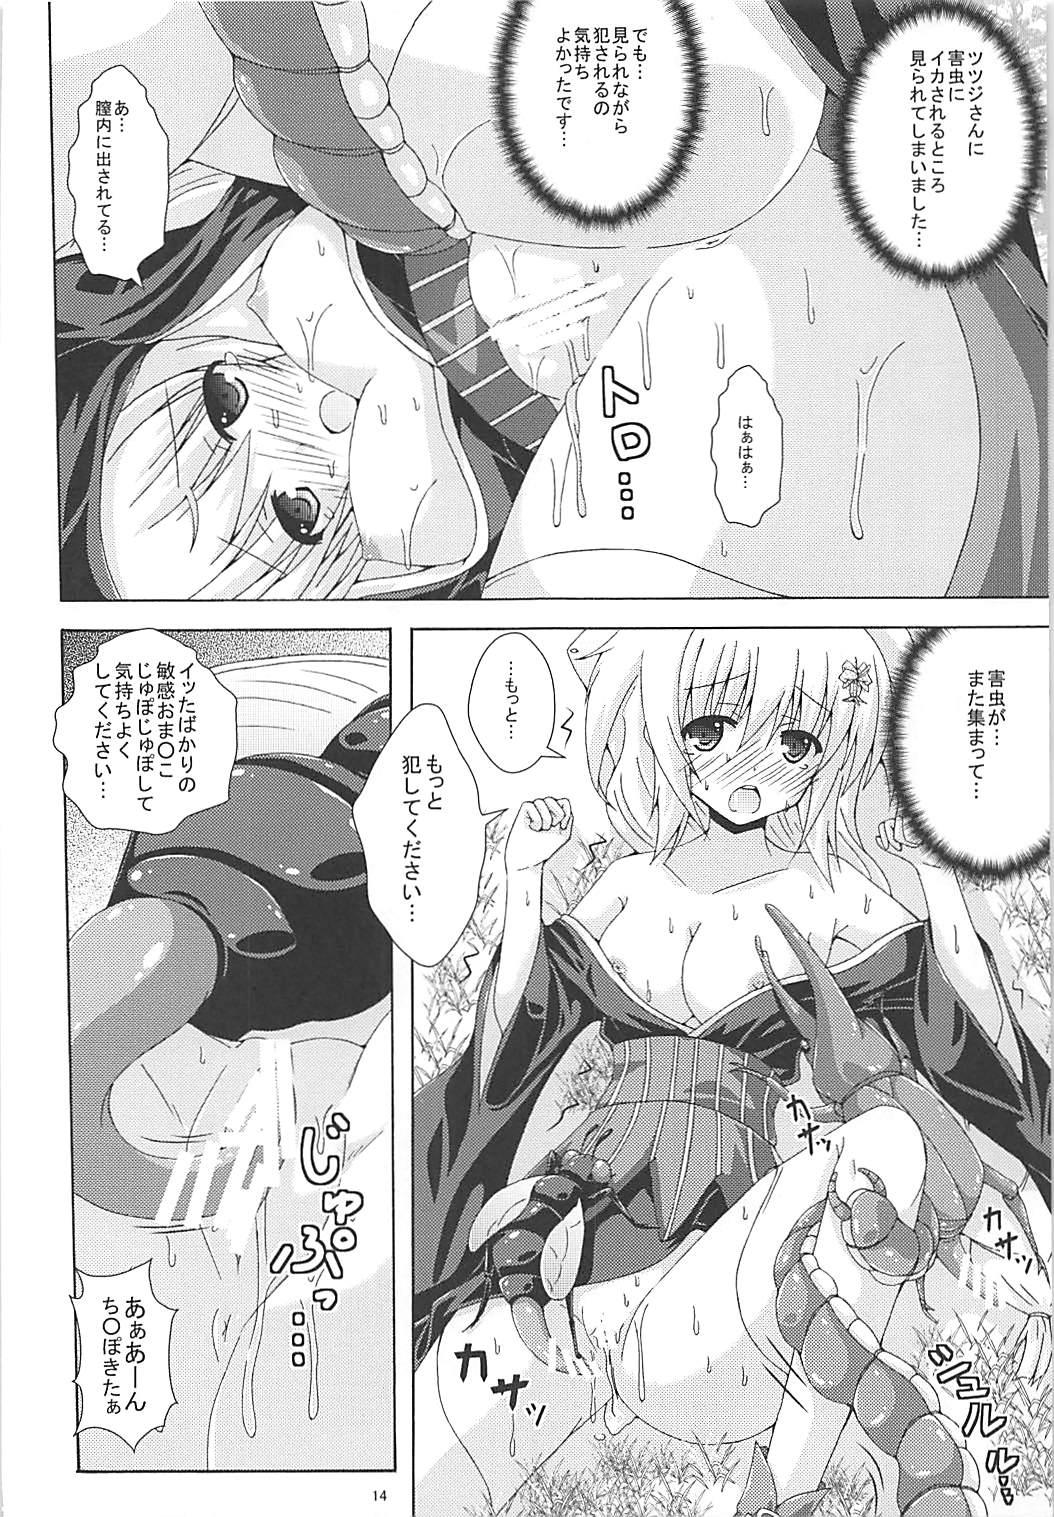 Comendo Tokushu Ninmu wa Kiken ga Ippai - Flower knight girl Madura - Page 13